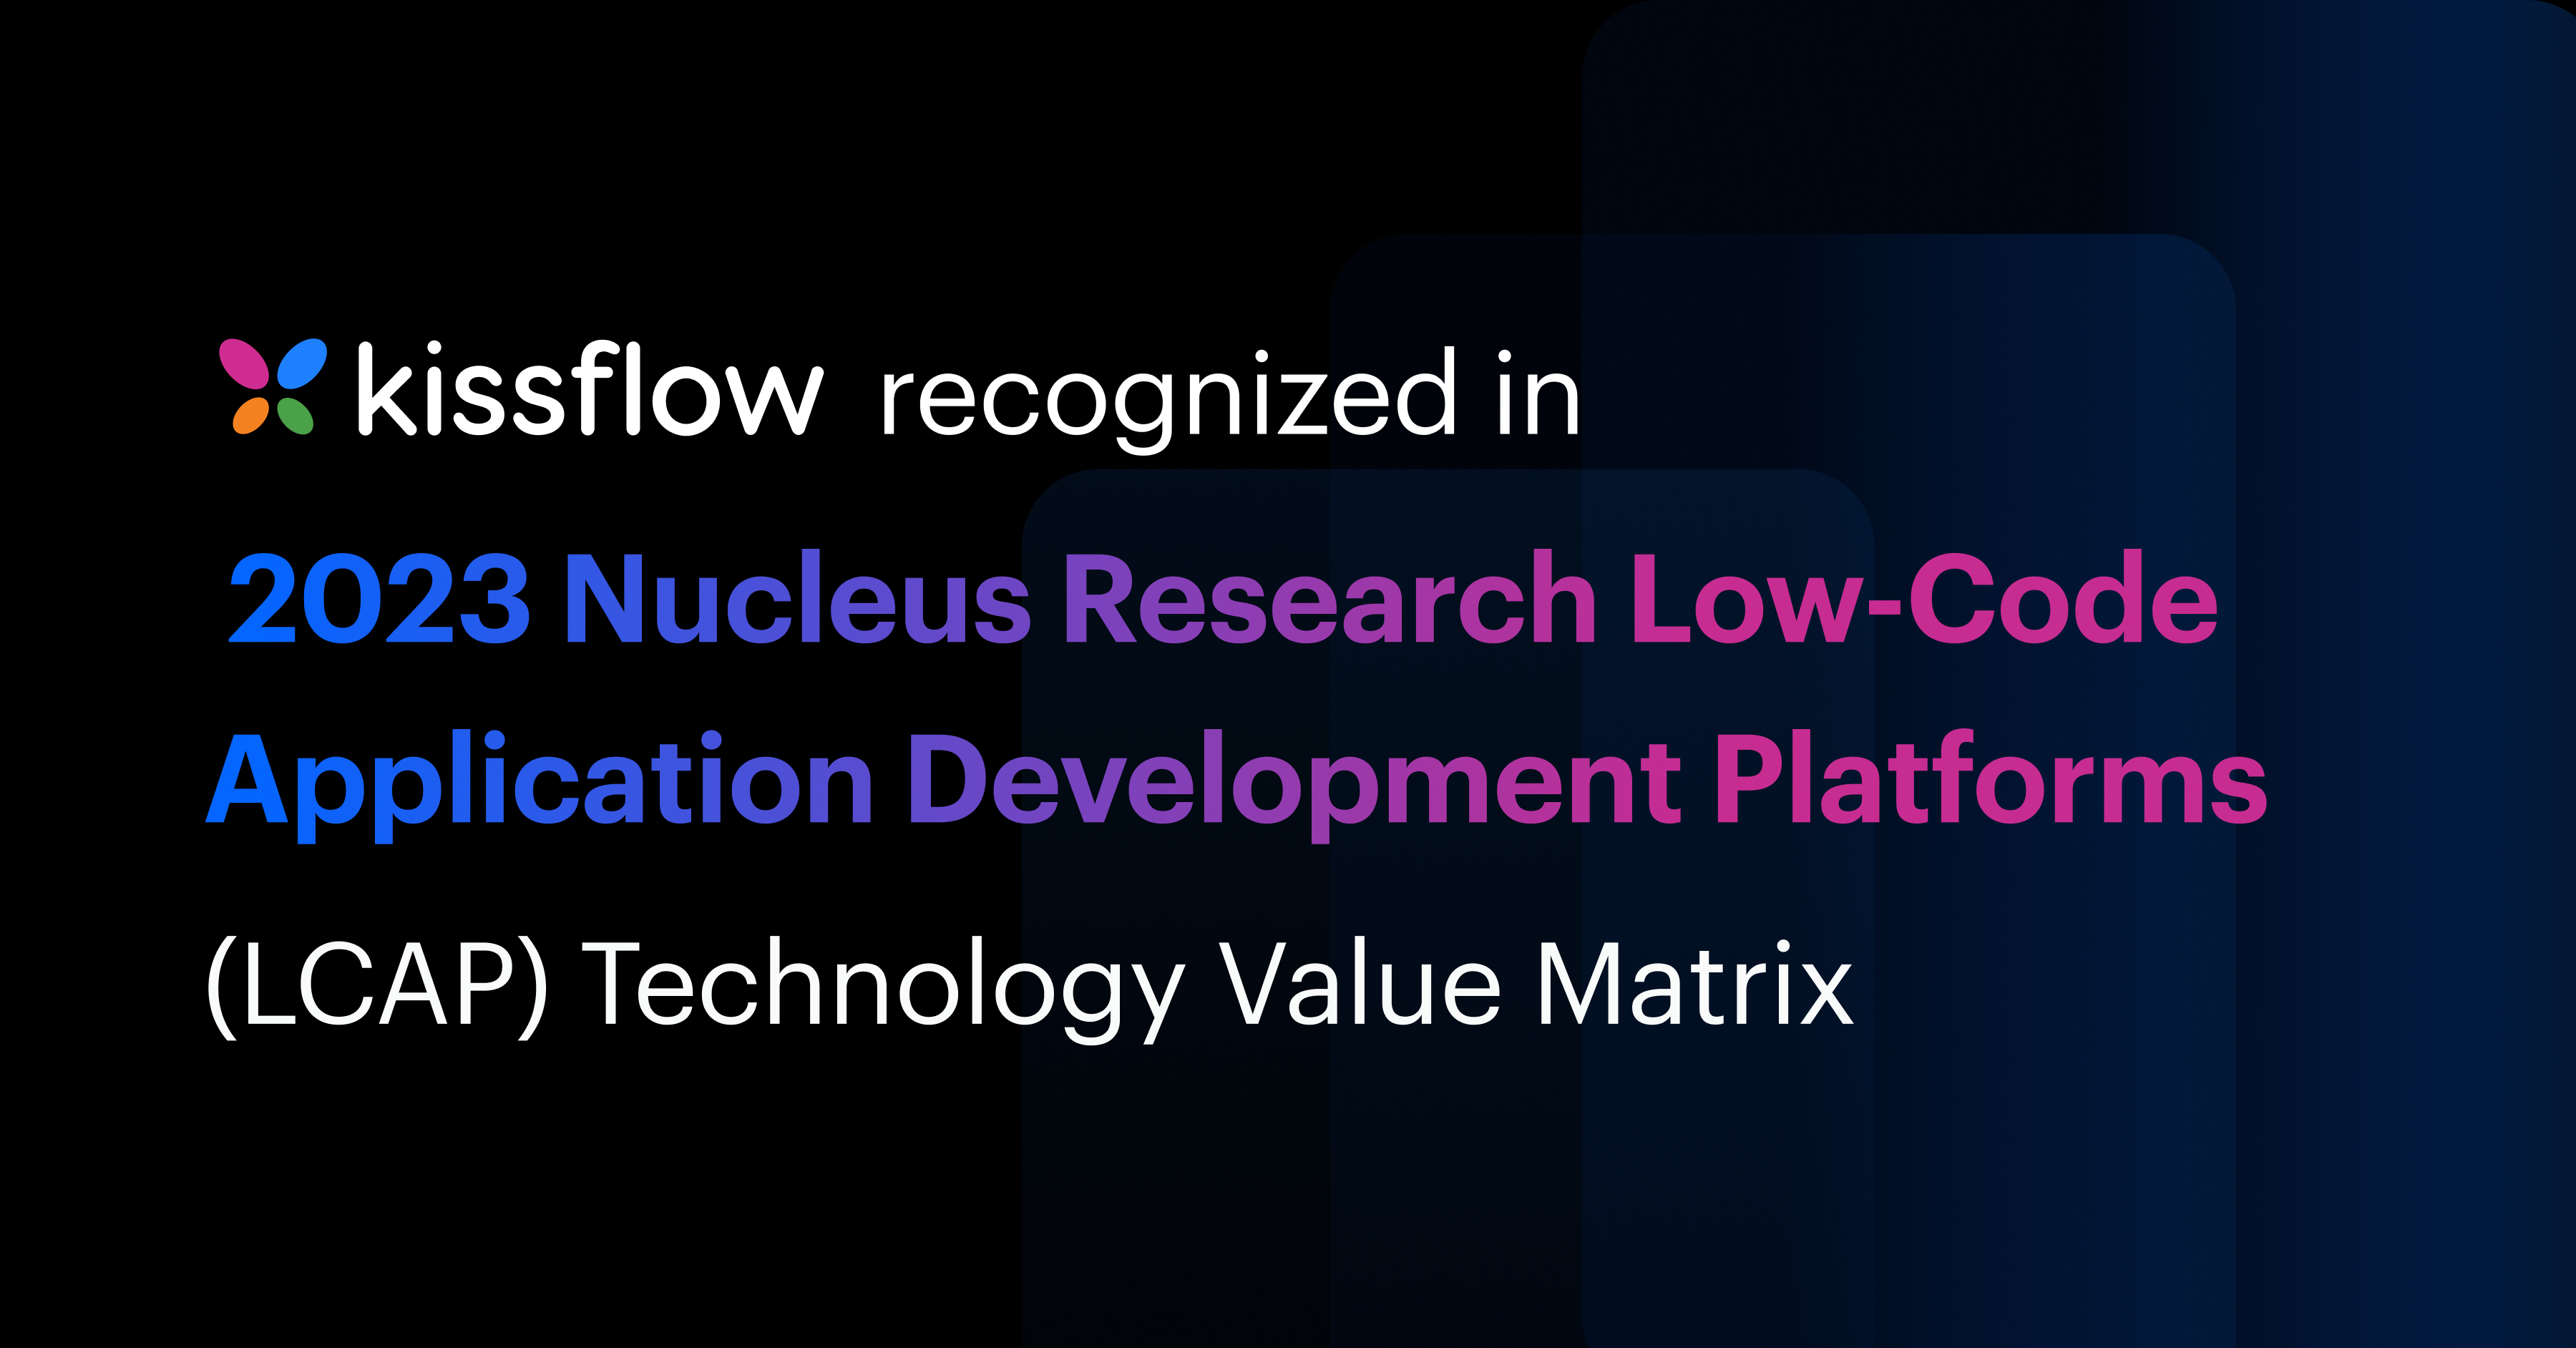 Kissflow Recognized in 2023 Nucleus Research Low-Code Application Development Platforms (LCAP) Technology Value Matrix